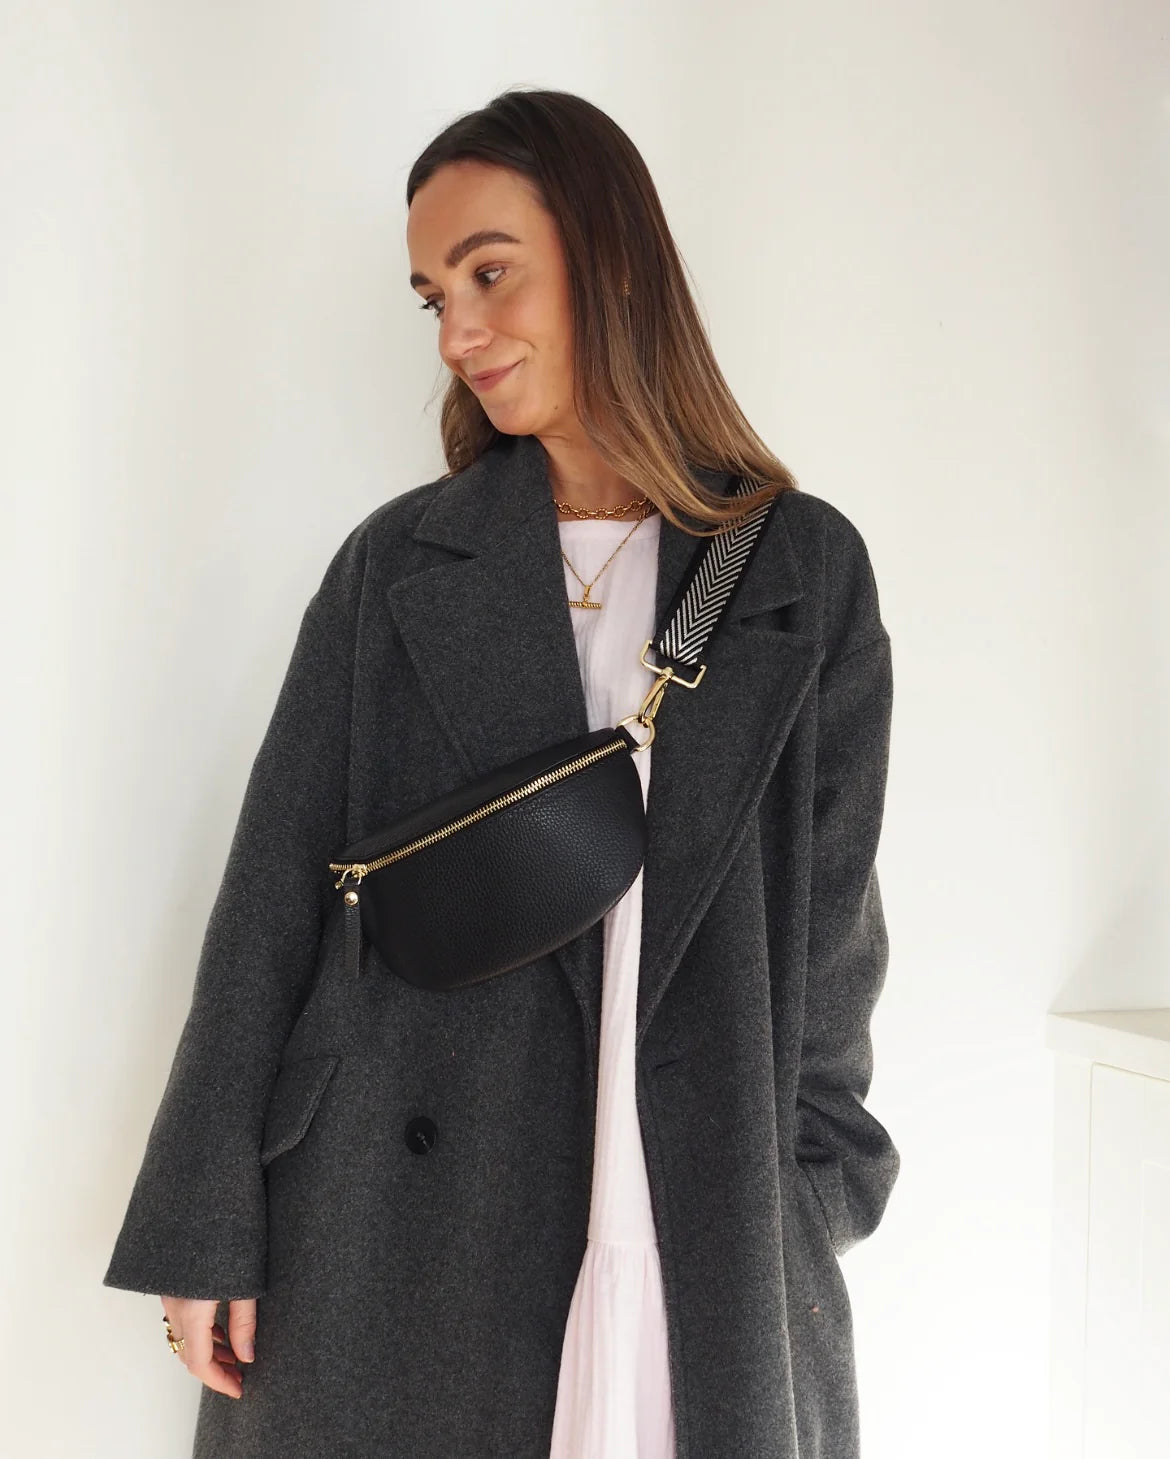 Elie Beaumont Designer Leather Sling Bag - Black (GOLD Fittings)